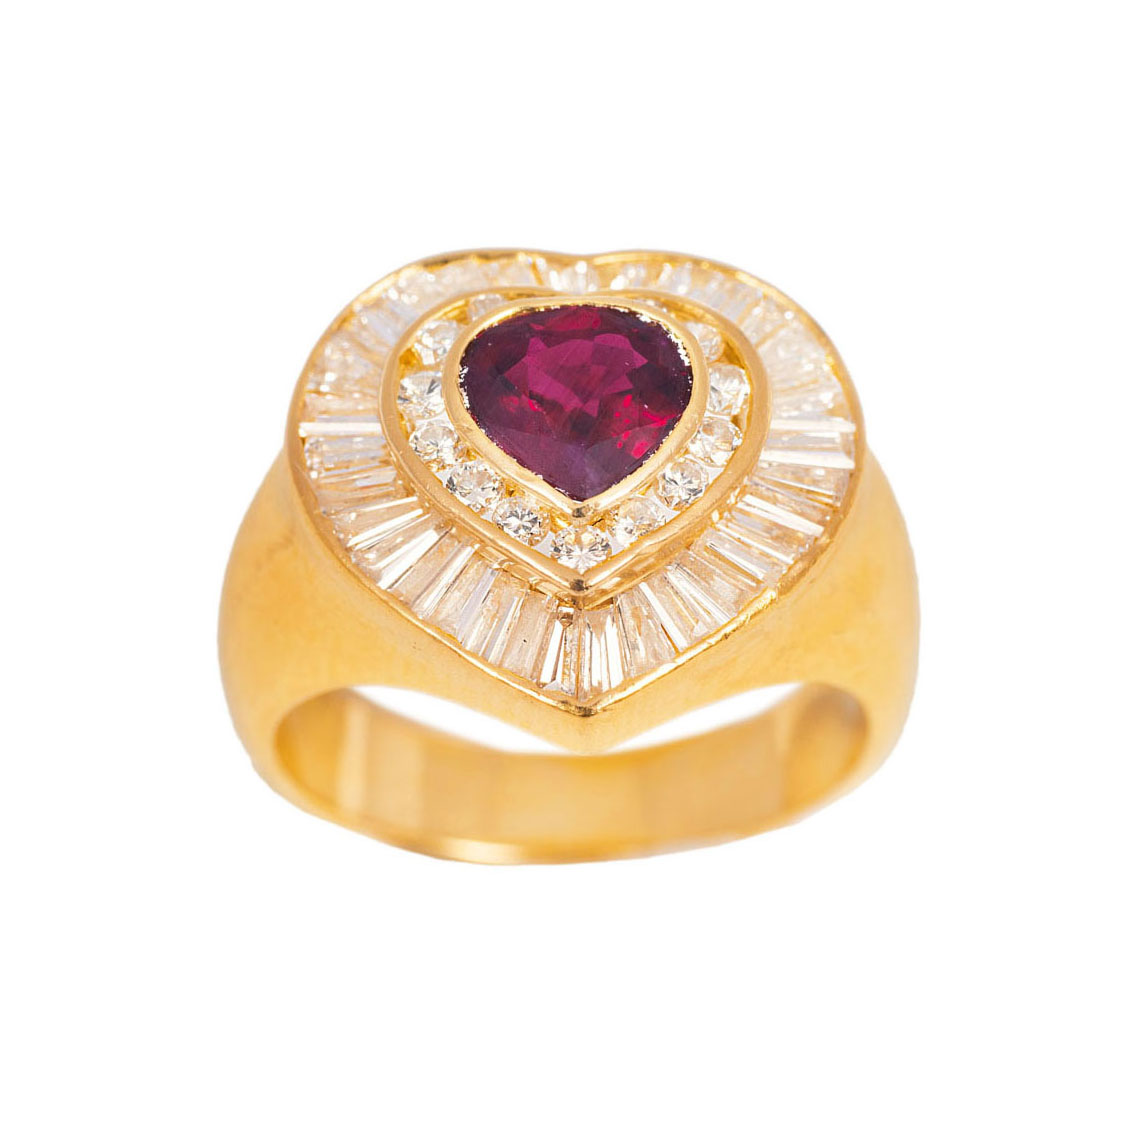 A ruby diamond ring in heart shape